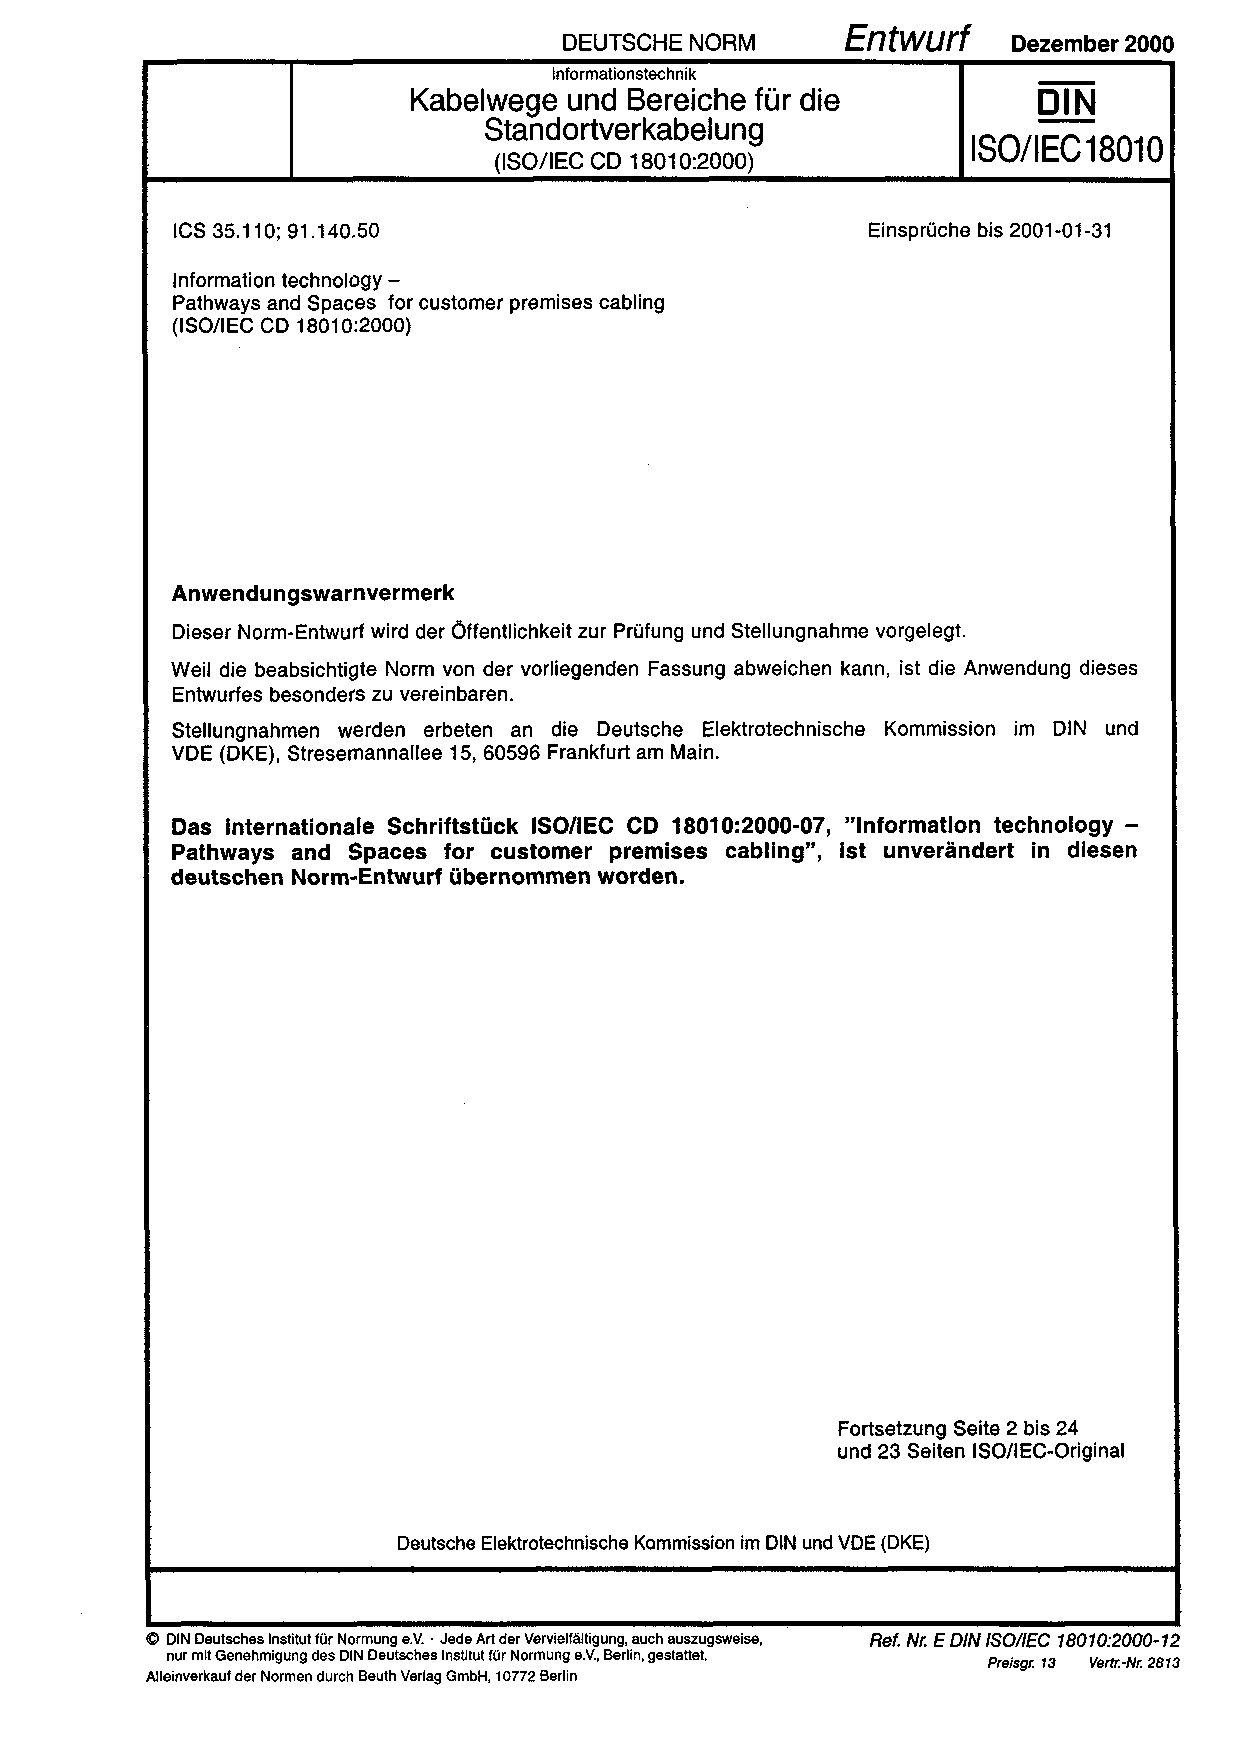 DIN ISO IEC 18010 E:2000-12封面图